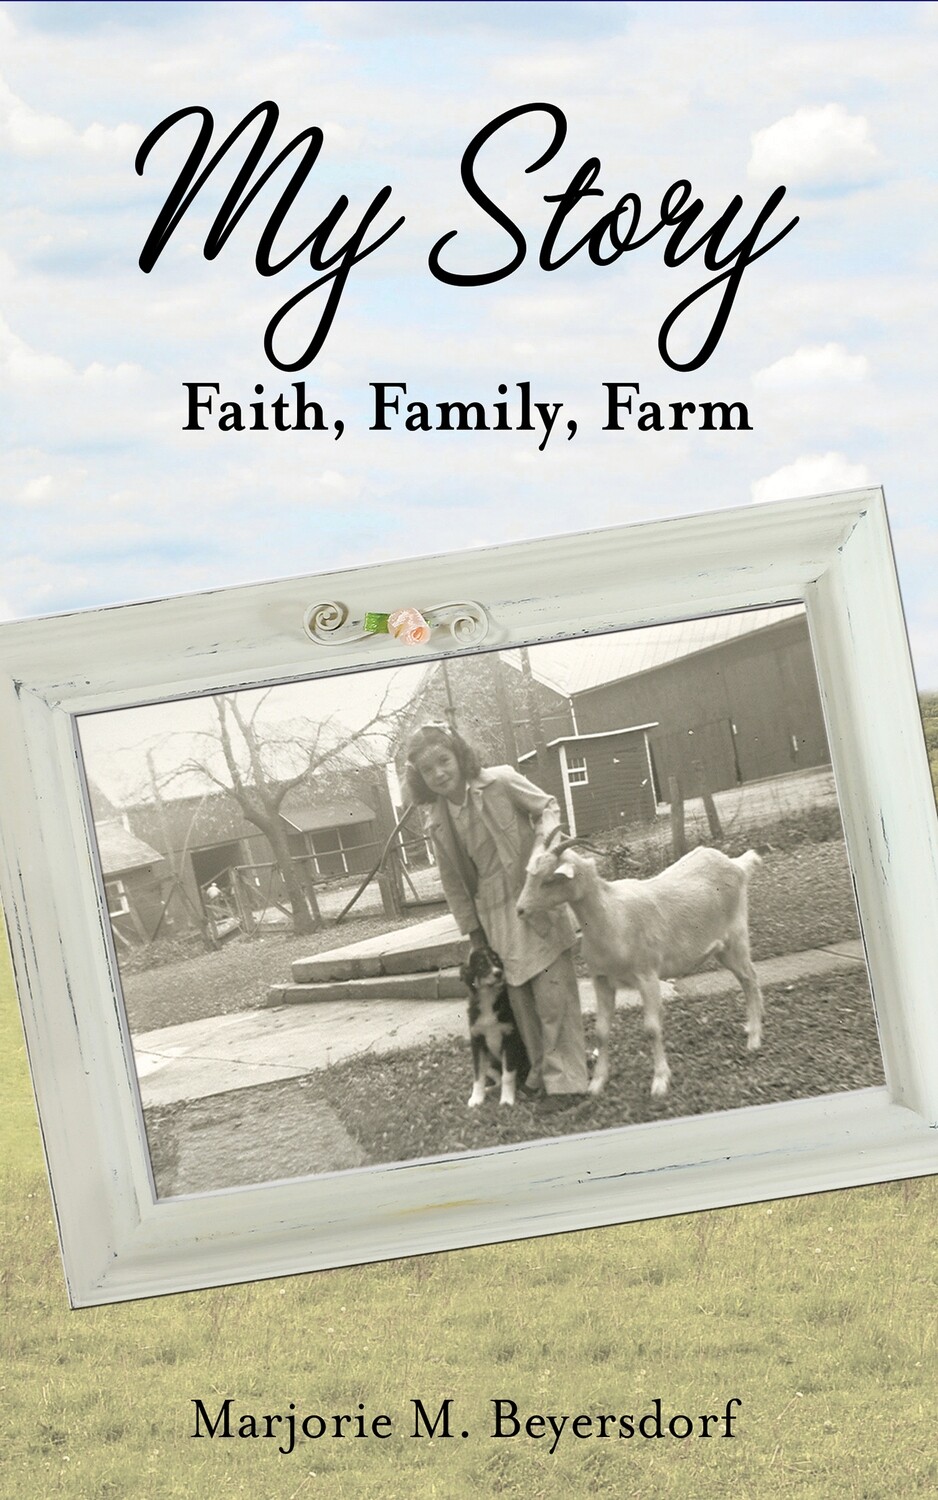 My Story: Faith, Family, Farm by Marjorie M. Beyersdorf